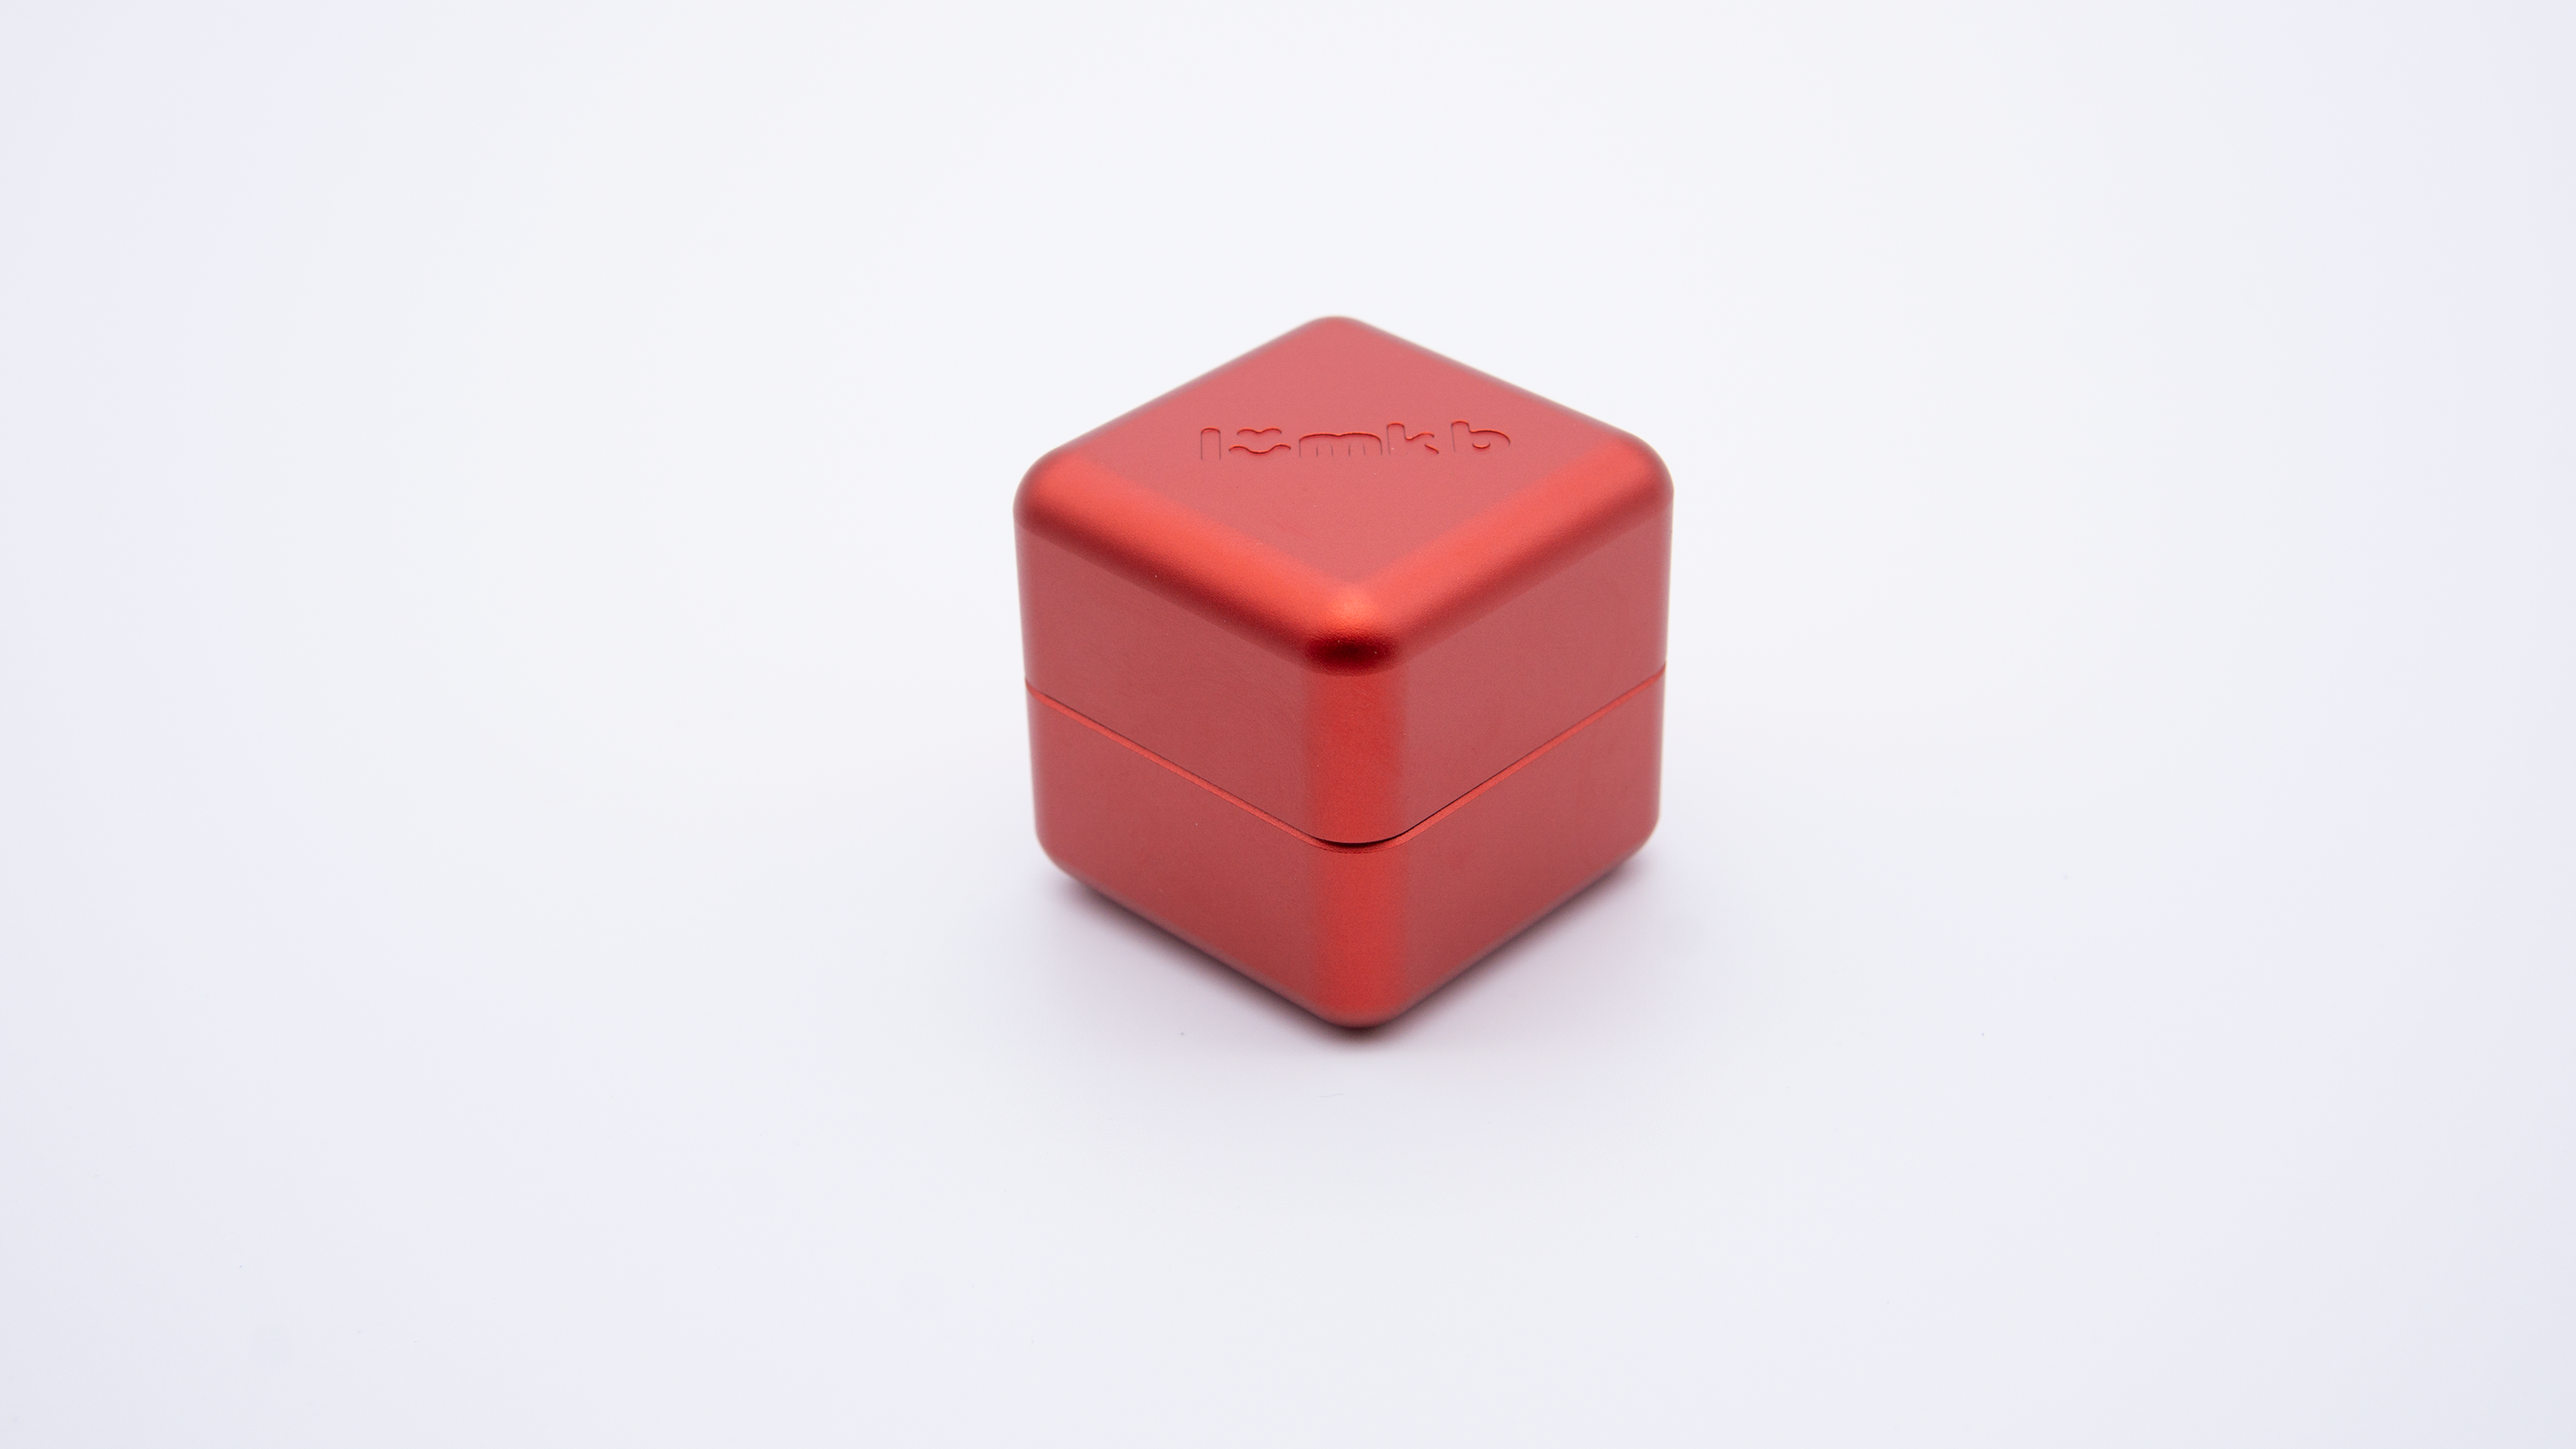 The Cube V1